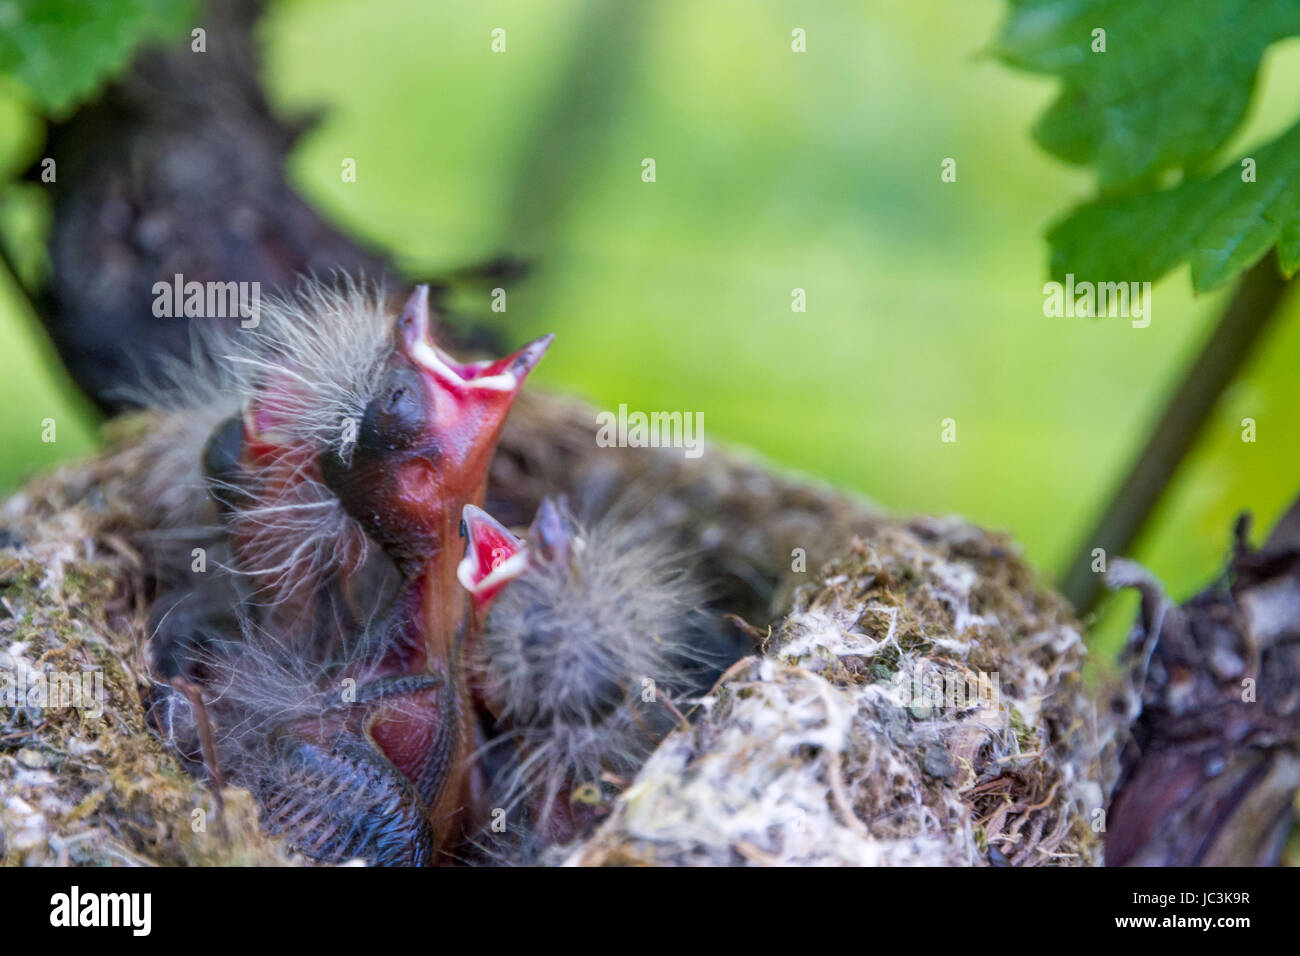 de petits oiseaux noirs affamés dans le nid. Tuddus merula Banque D'Images